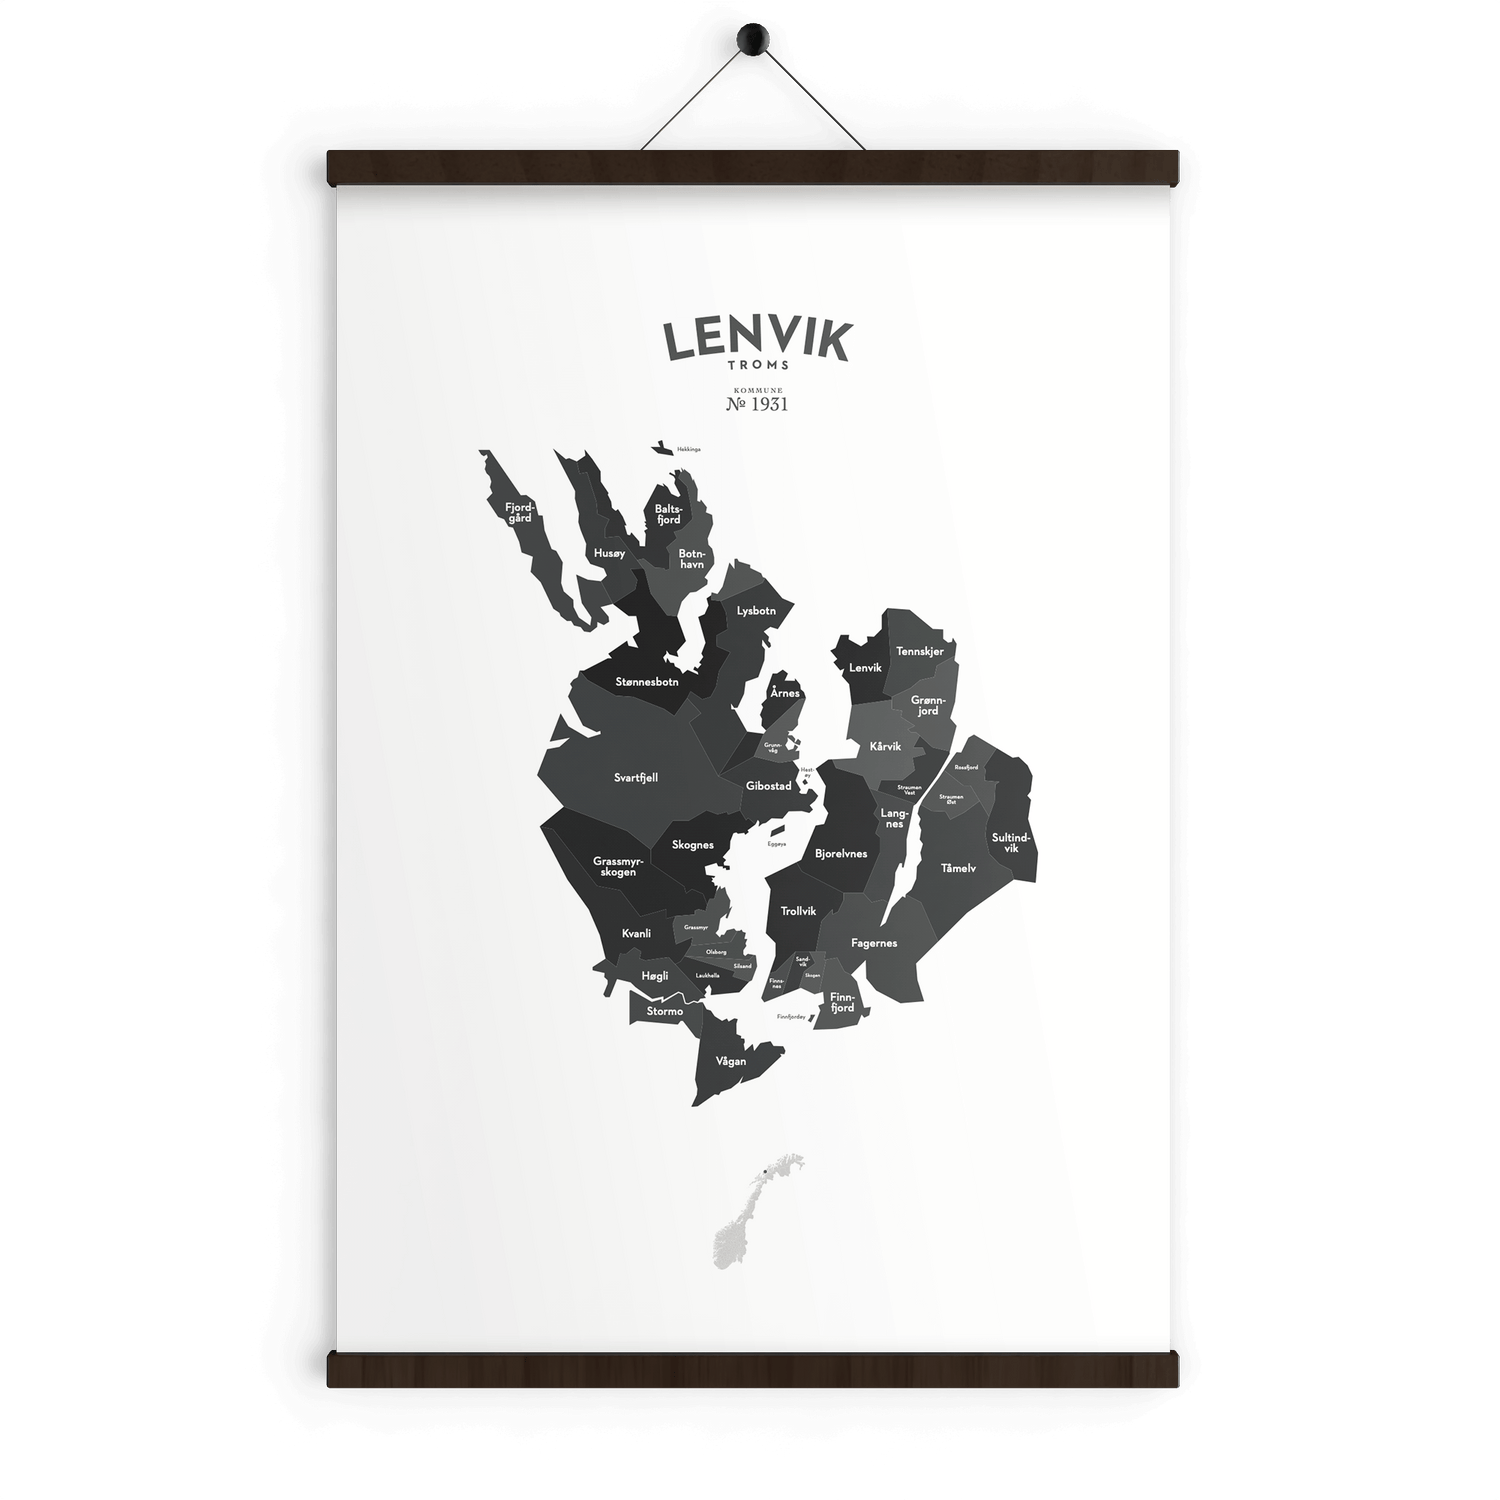 Lenvik